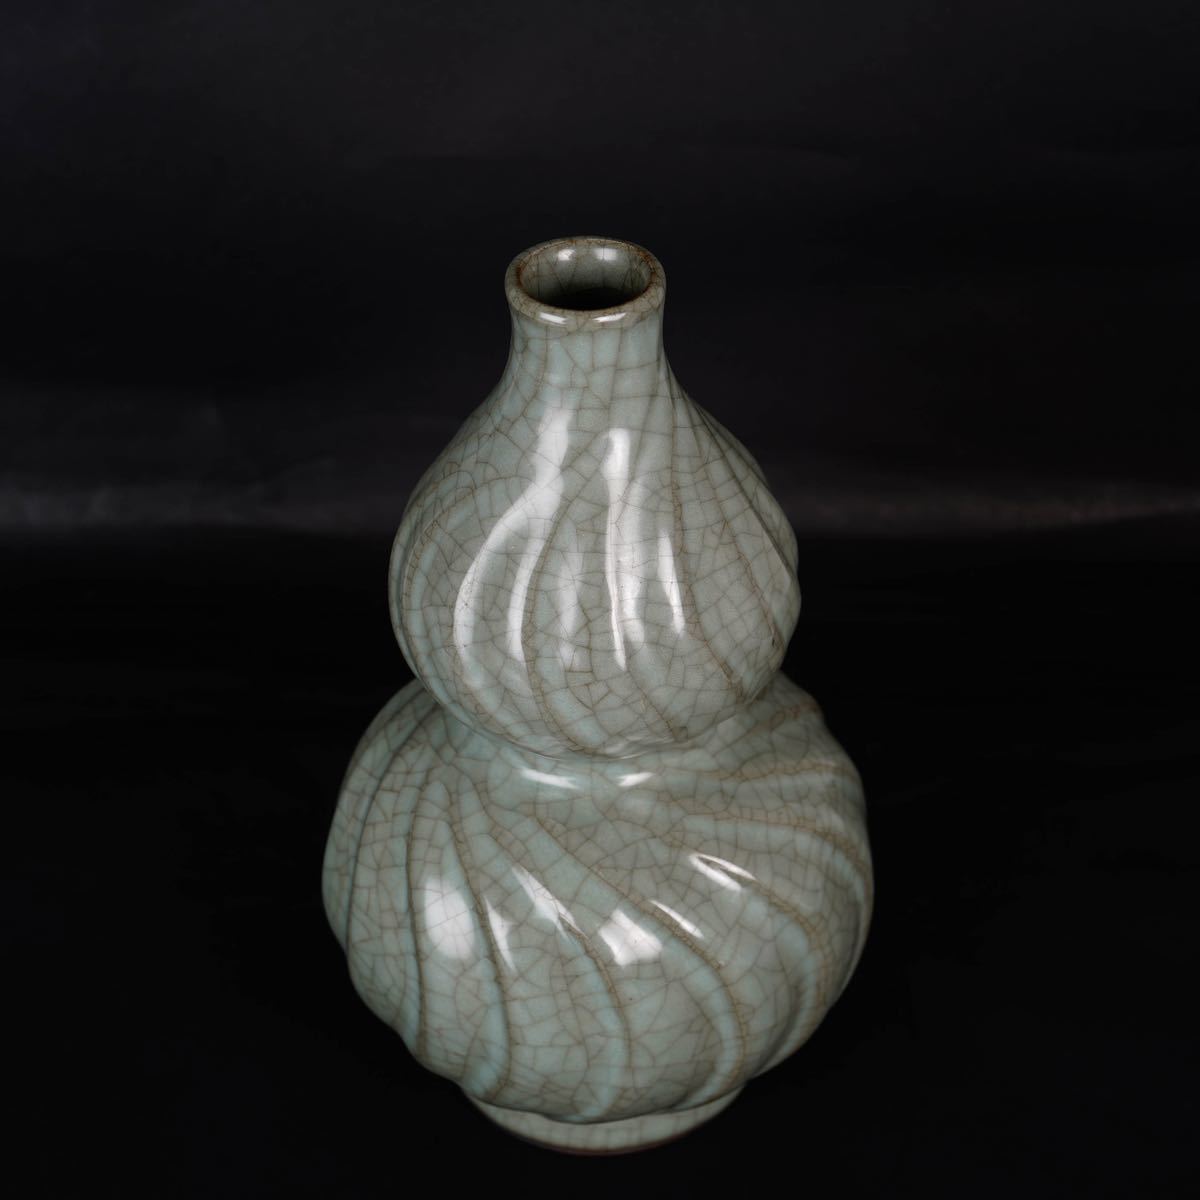 【後】GF011 青磁葫蘆瓶 古美術 骨董品 古玩 時代物 古道具 中国美術品 朝鮮美術品 日本美術品_画像8